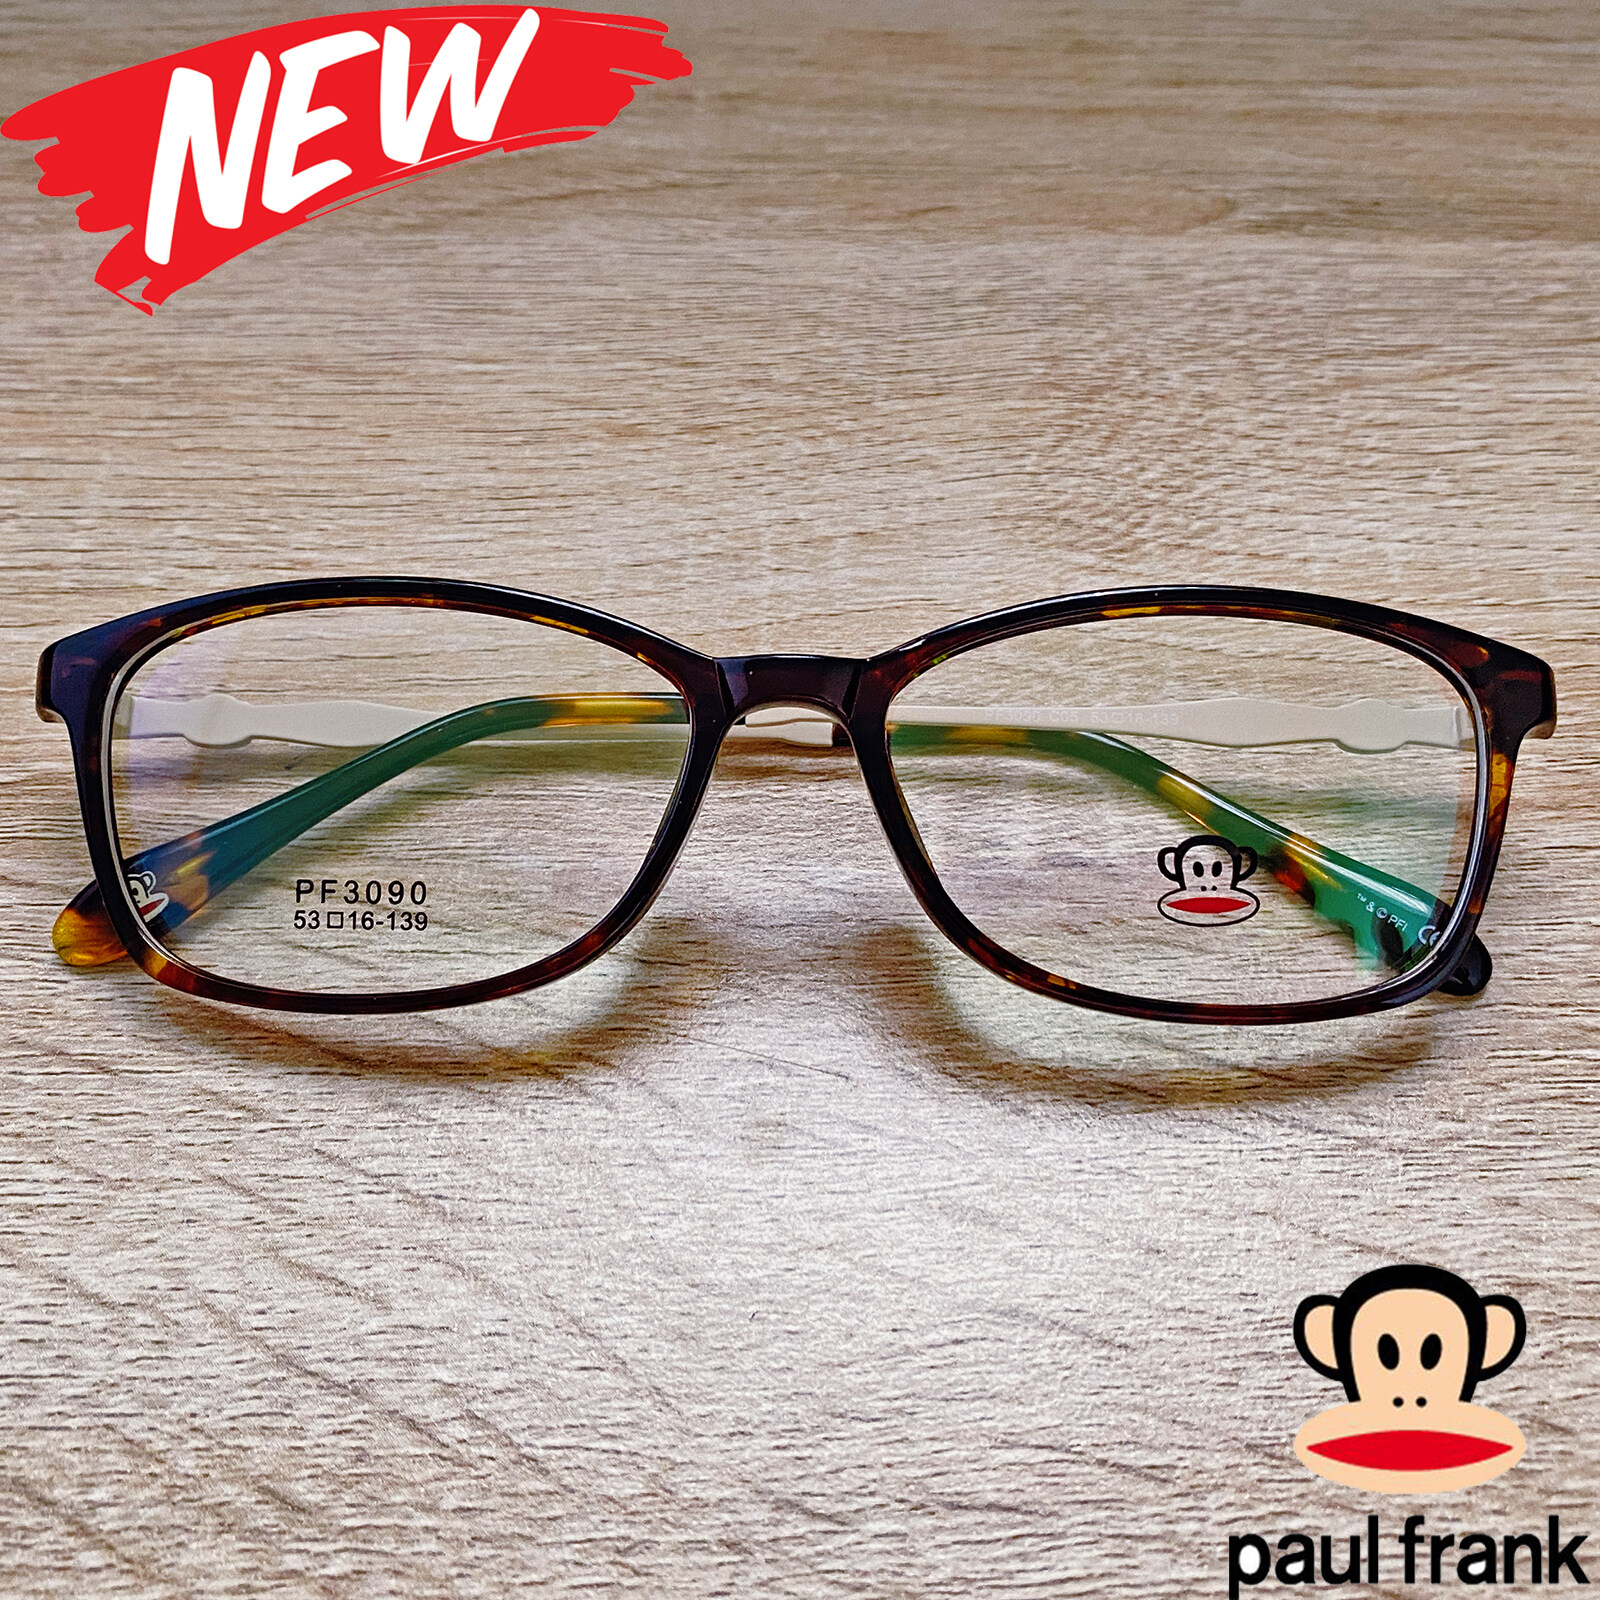 แว่นตาสำหรับตัดเลนส์ กรอบแว่นตา Fashion รุ่น Paul Frank 3090 สีน้ำตาล กรอบเต็ม ทรงรี ขาข้อต่อ TR 90 รับตัดเลนส์ทุกชนิด ราคาถูก